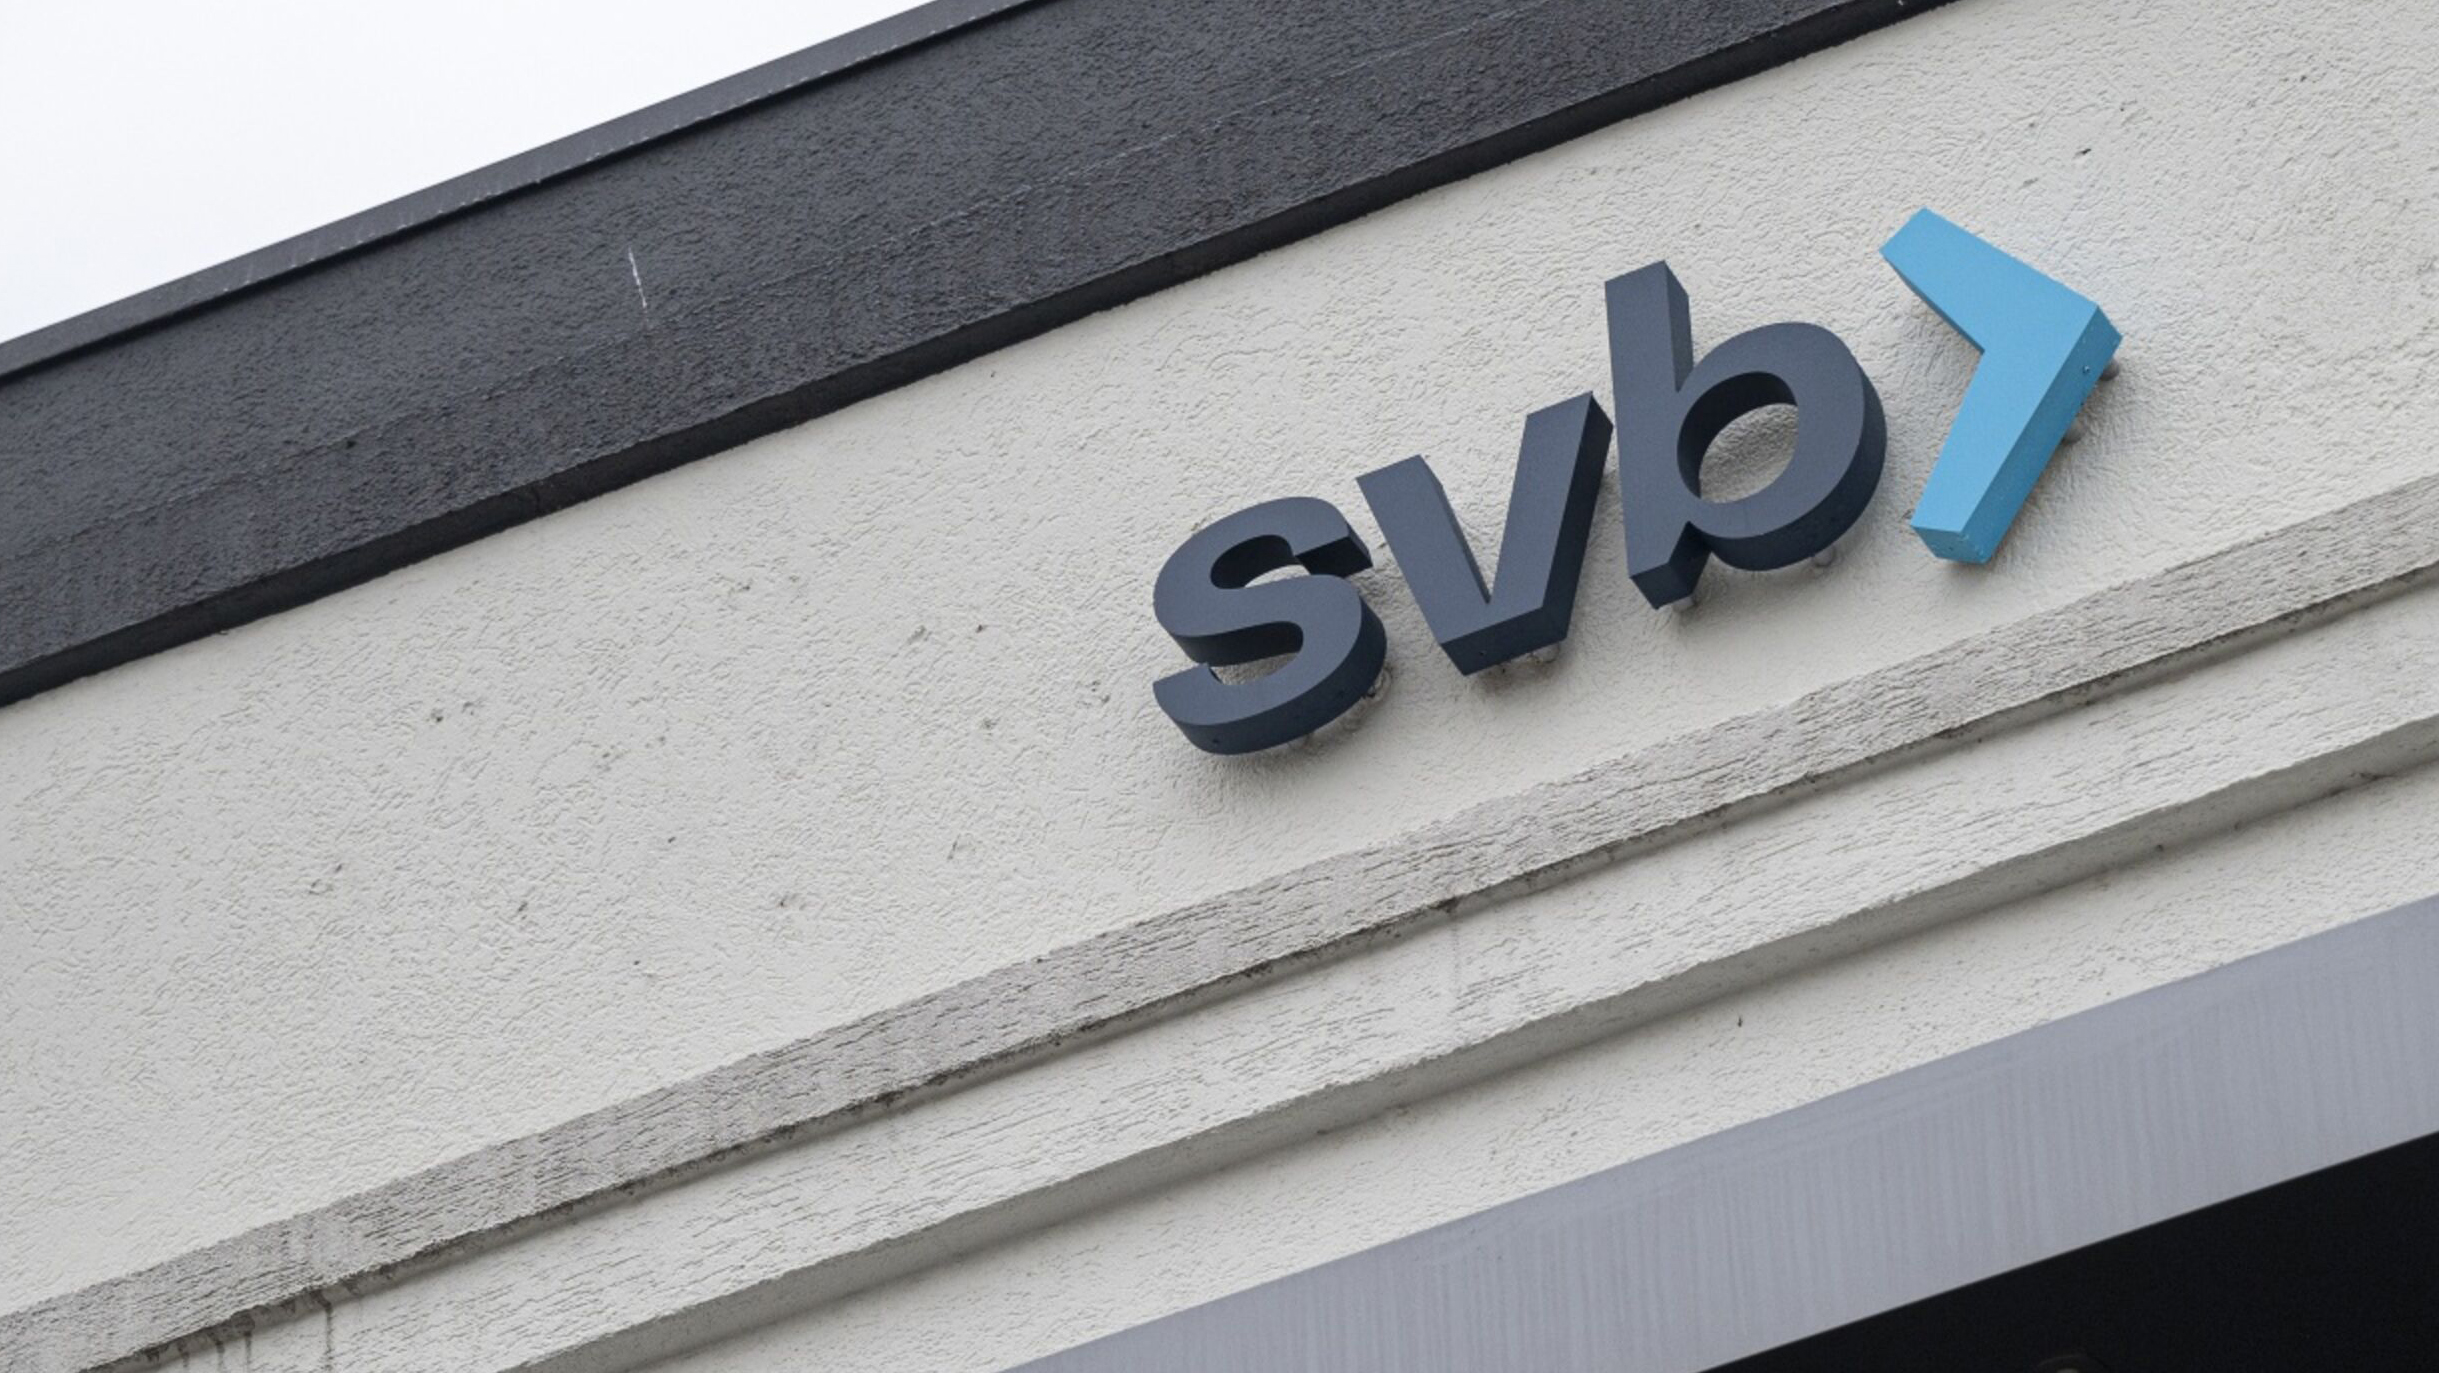 SVB logo on building facade.